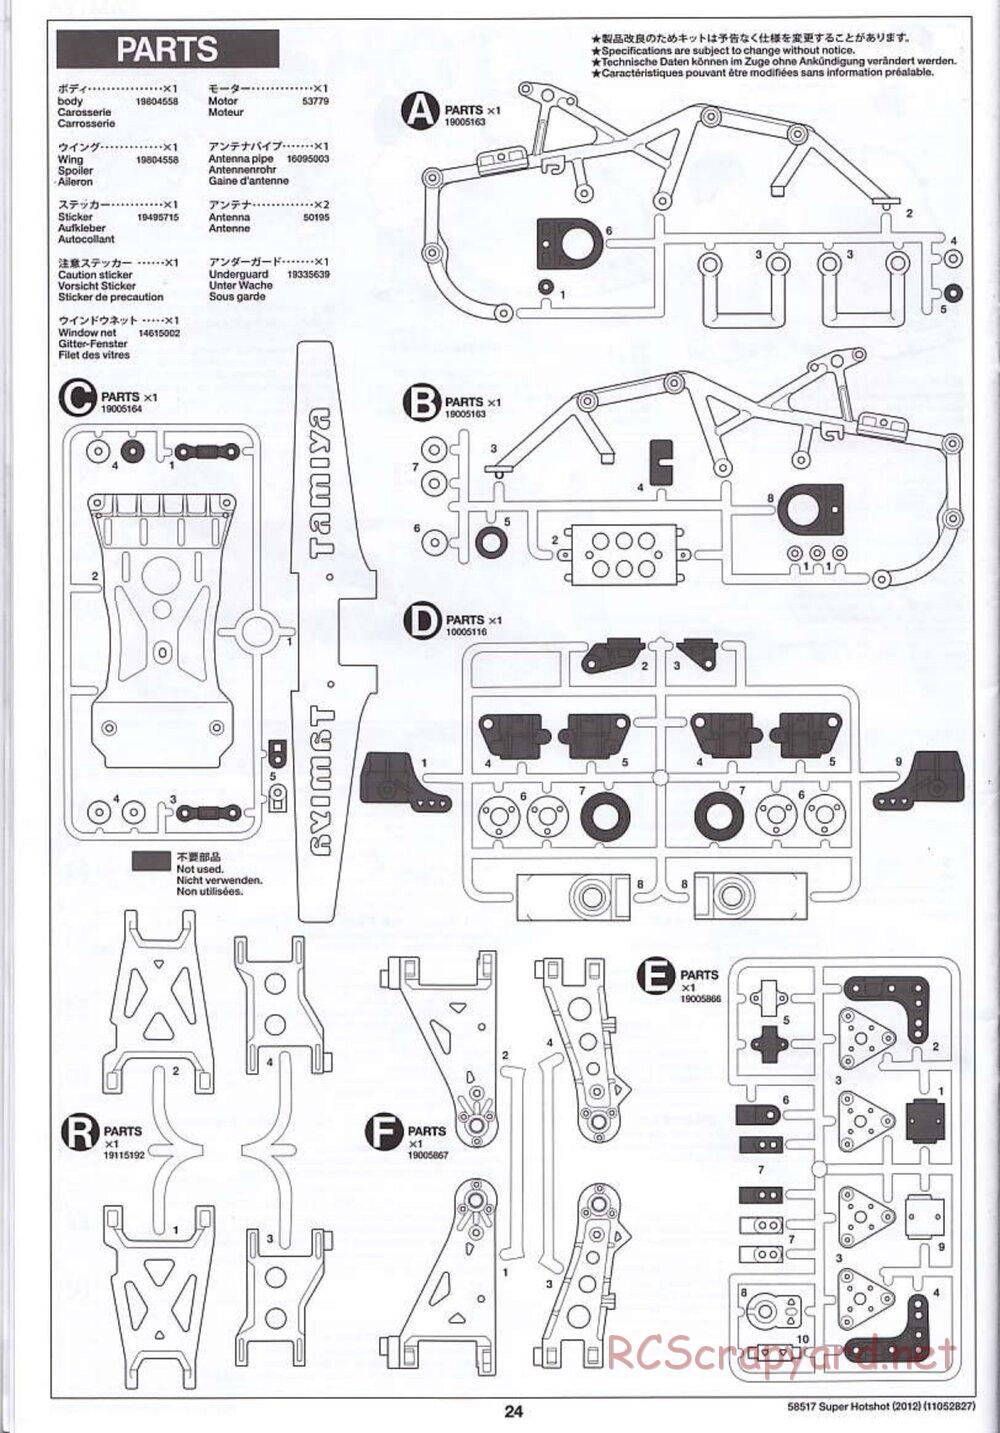 Tamiya - Super Hotshot 2012 - HS Chassis - Manual - Page 24